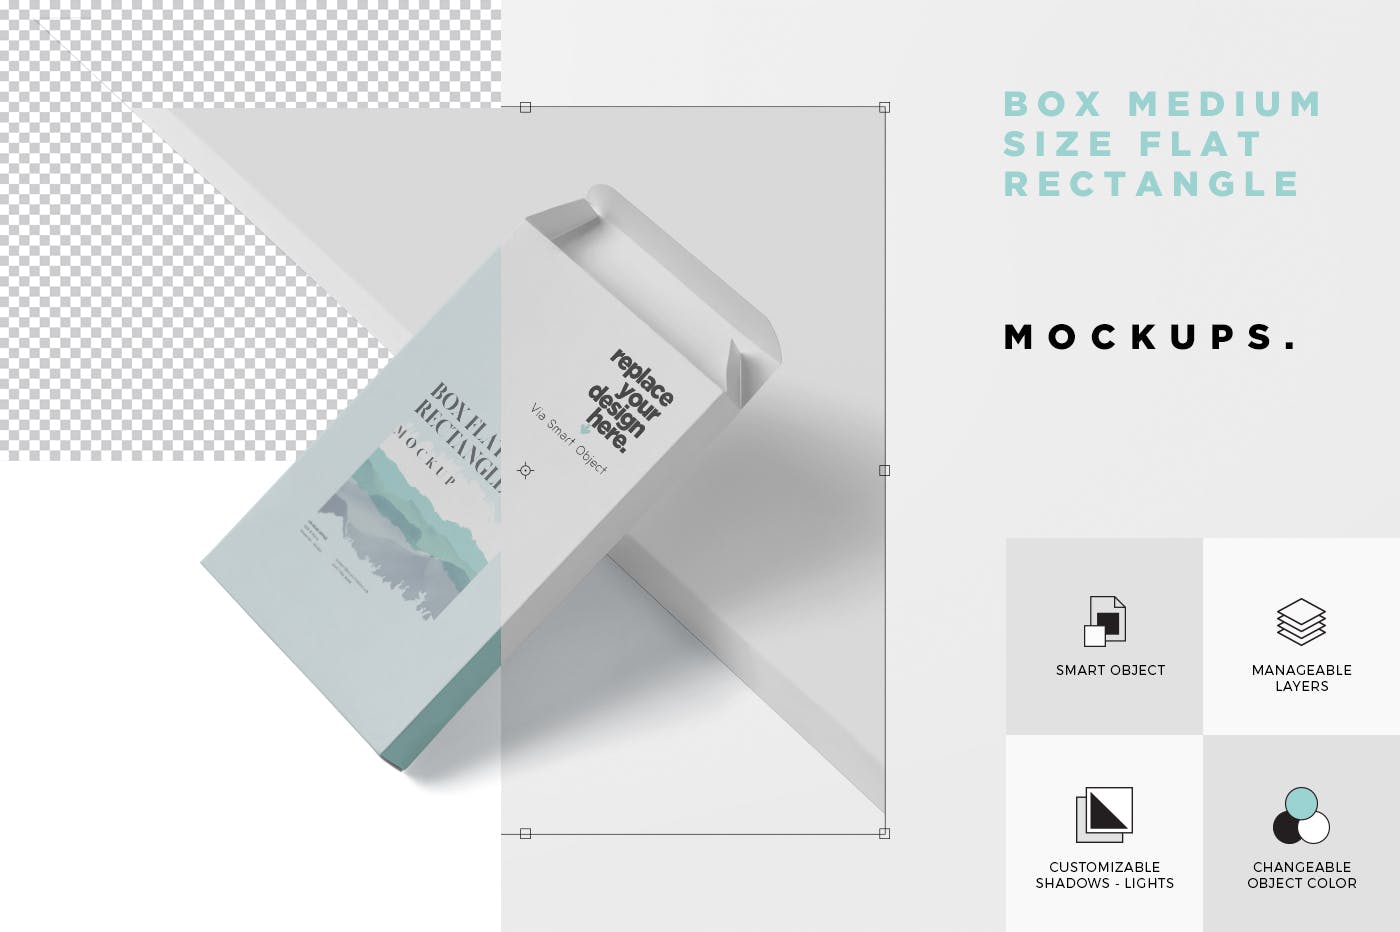 扁平矩形扑克牌包装盒第一素材精选模板 Box Mockup – Medium Size Flat Rectangle Shape插图(4)